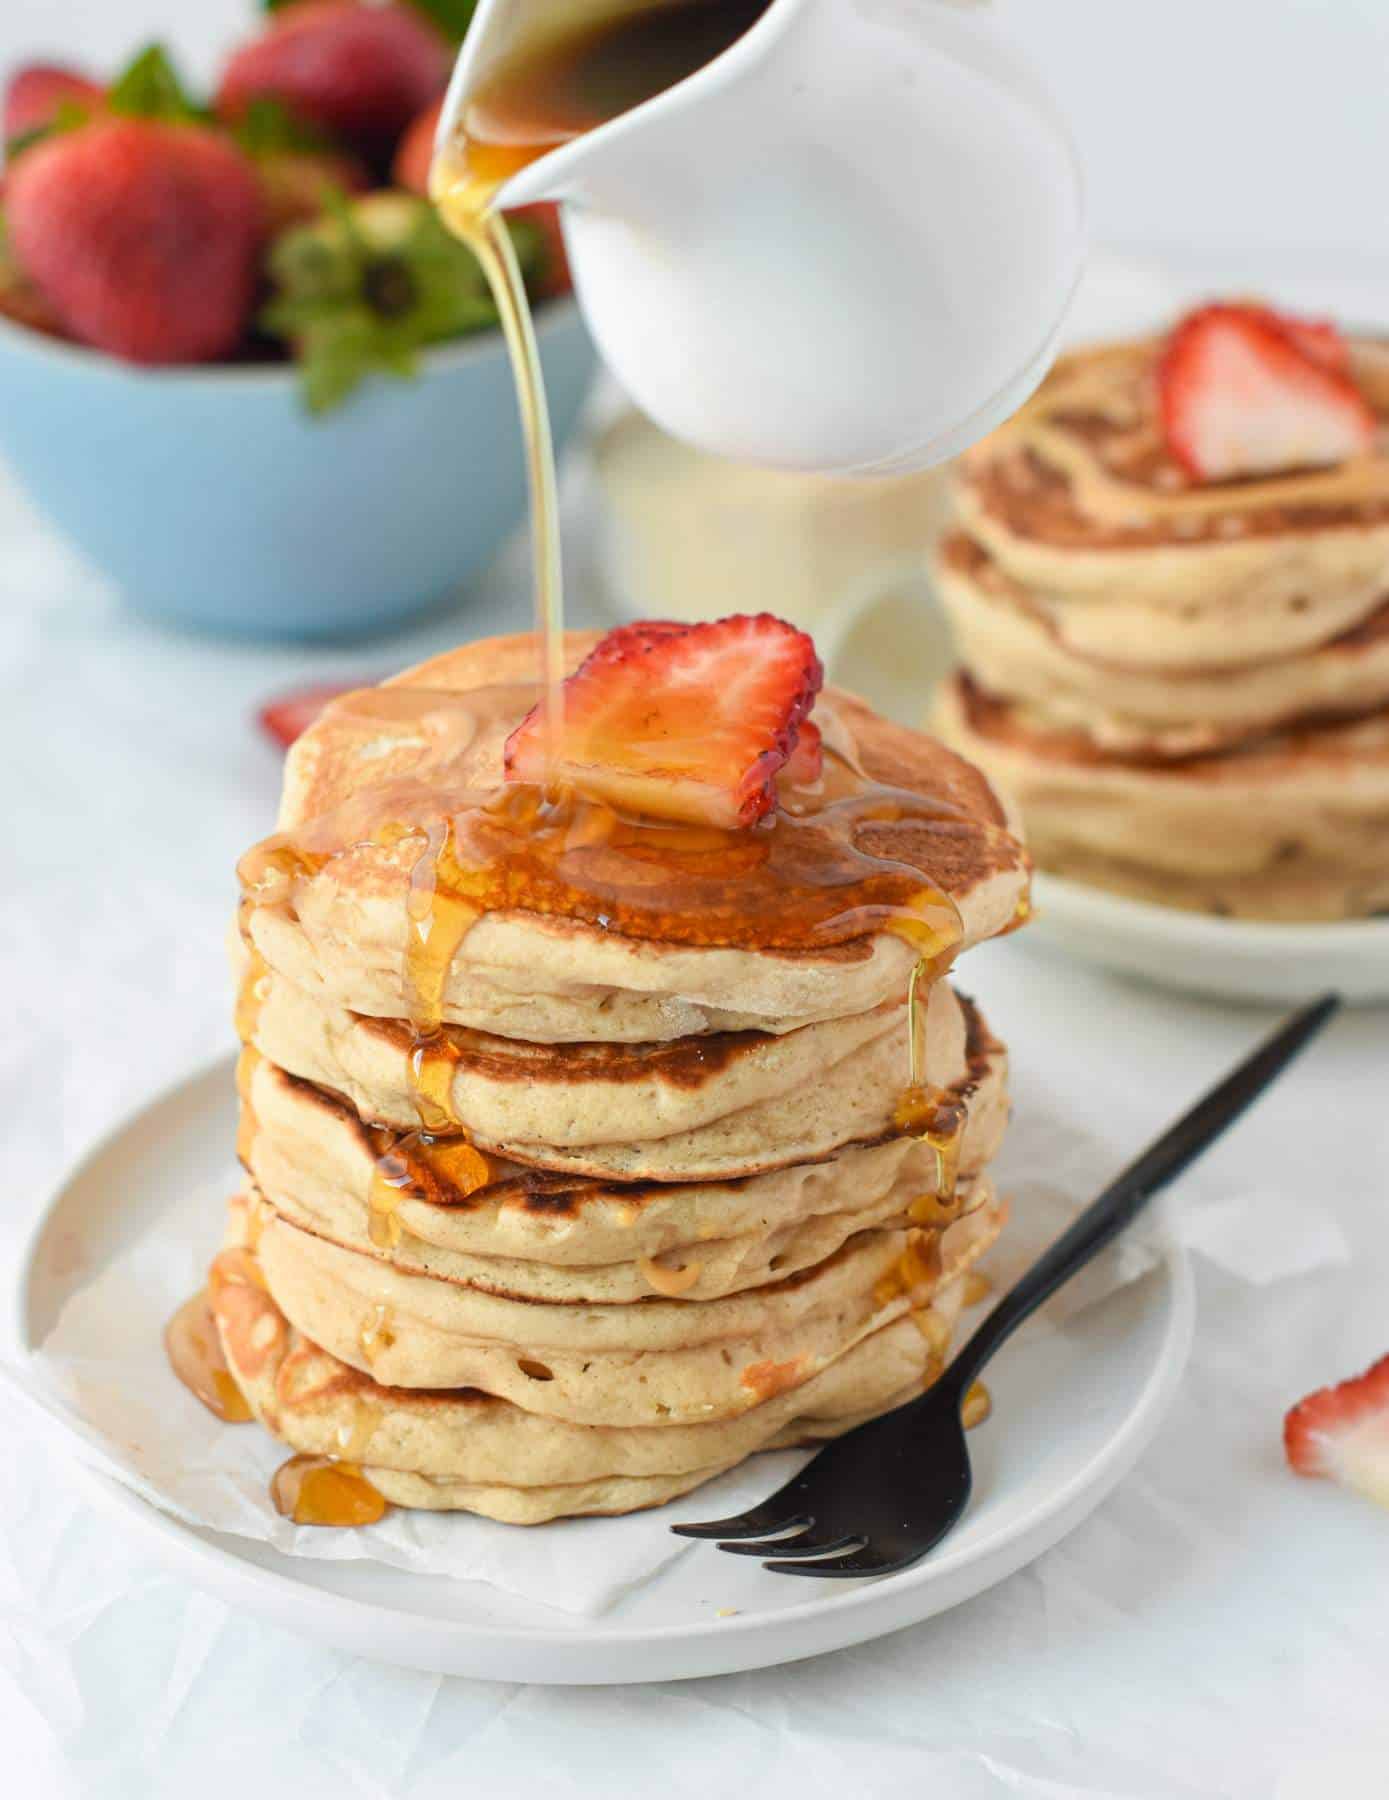 Share 14 kuva vegan protein pancakes recipe